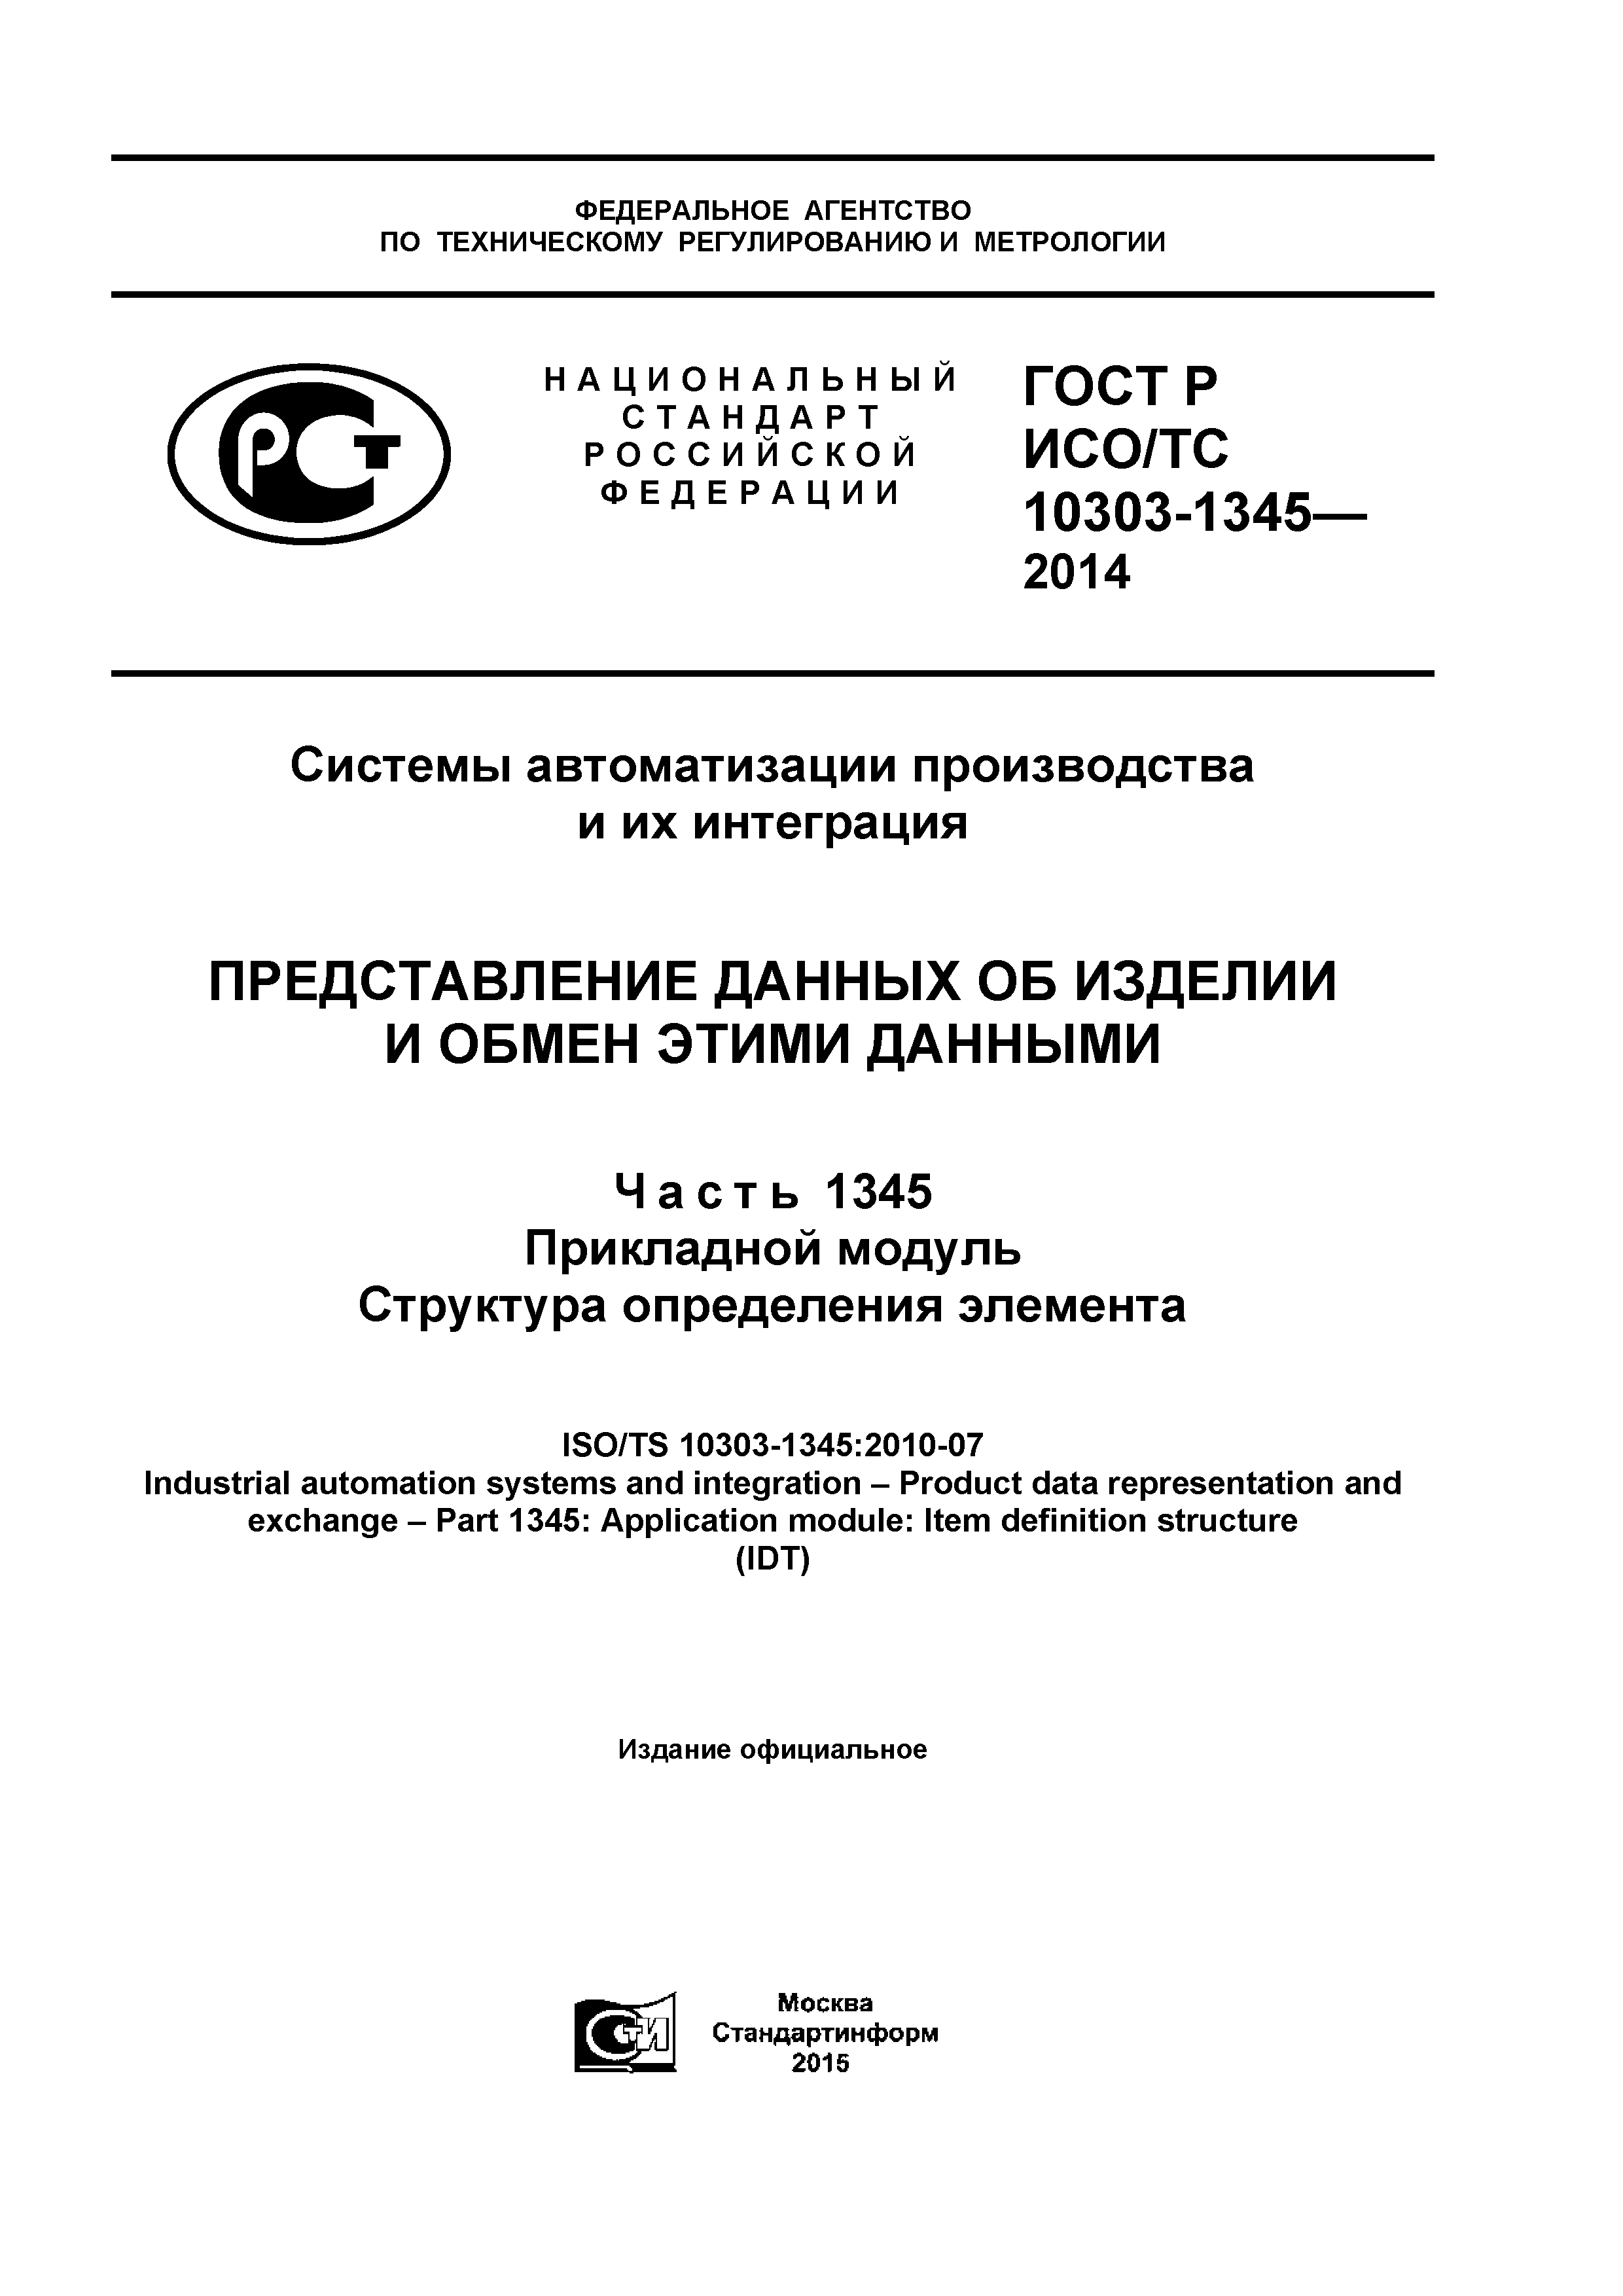 ГОСТ Р ИСО/ТС 10303-1345-2014